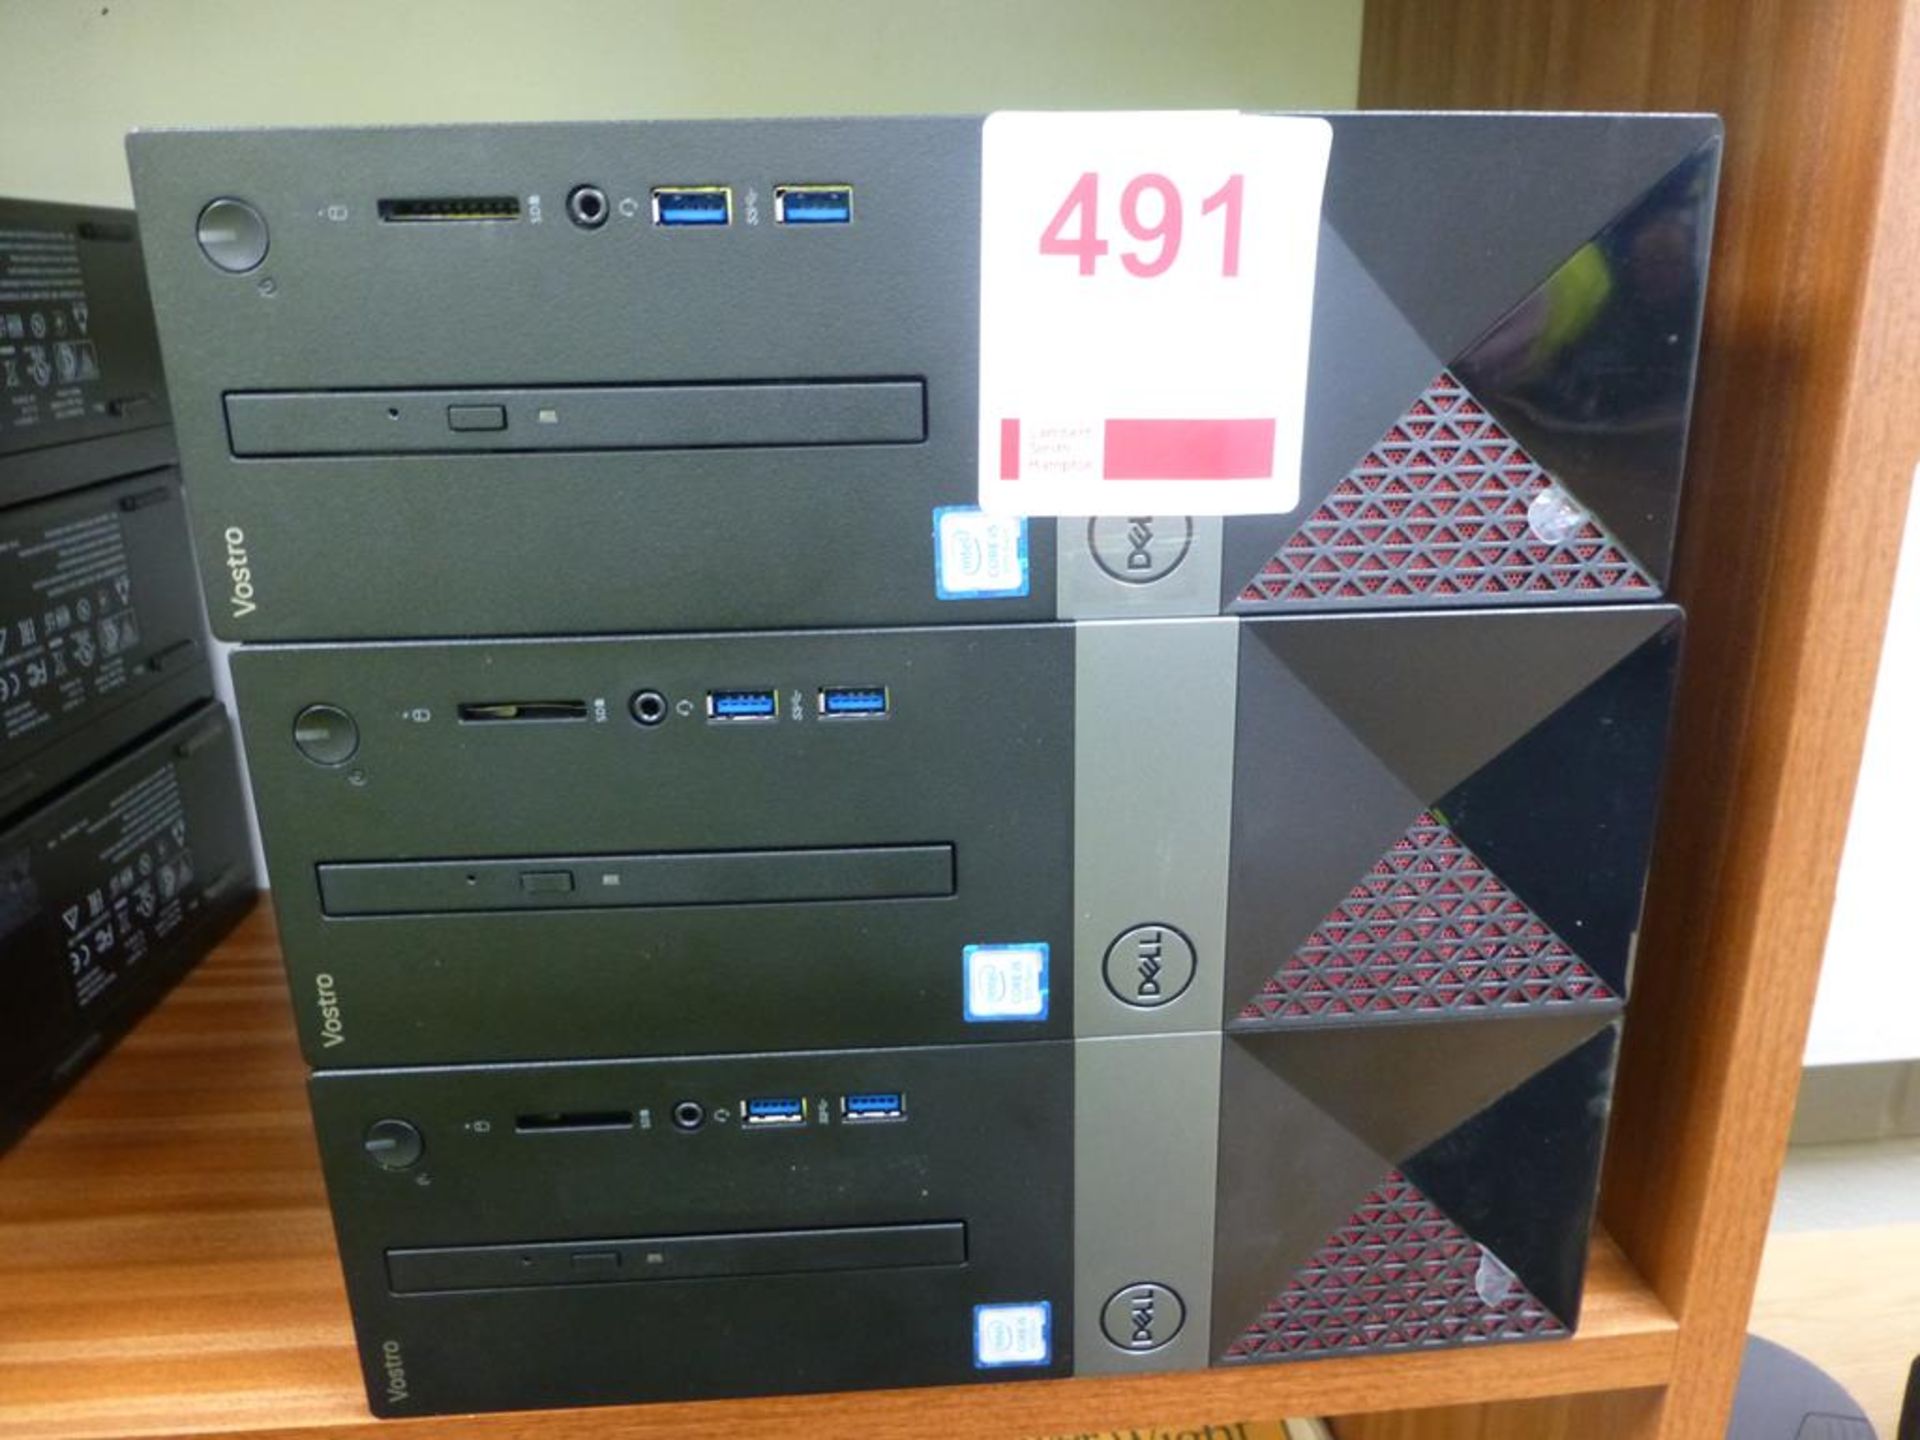 3 Dell Vostro D13S core i5 desktop personal computer base units, service tag Nos, 1TH8GQ2, 1TT1GQ2